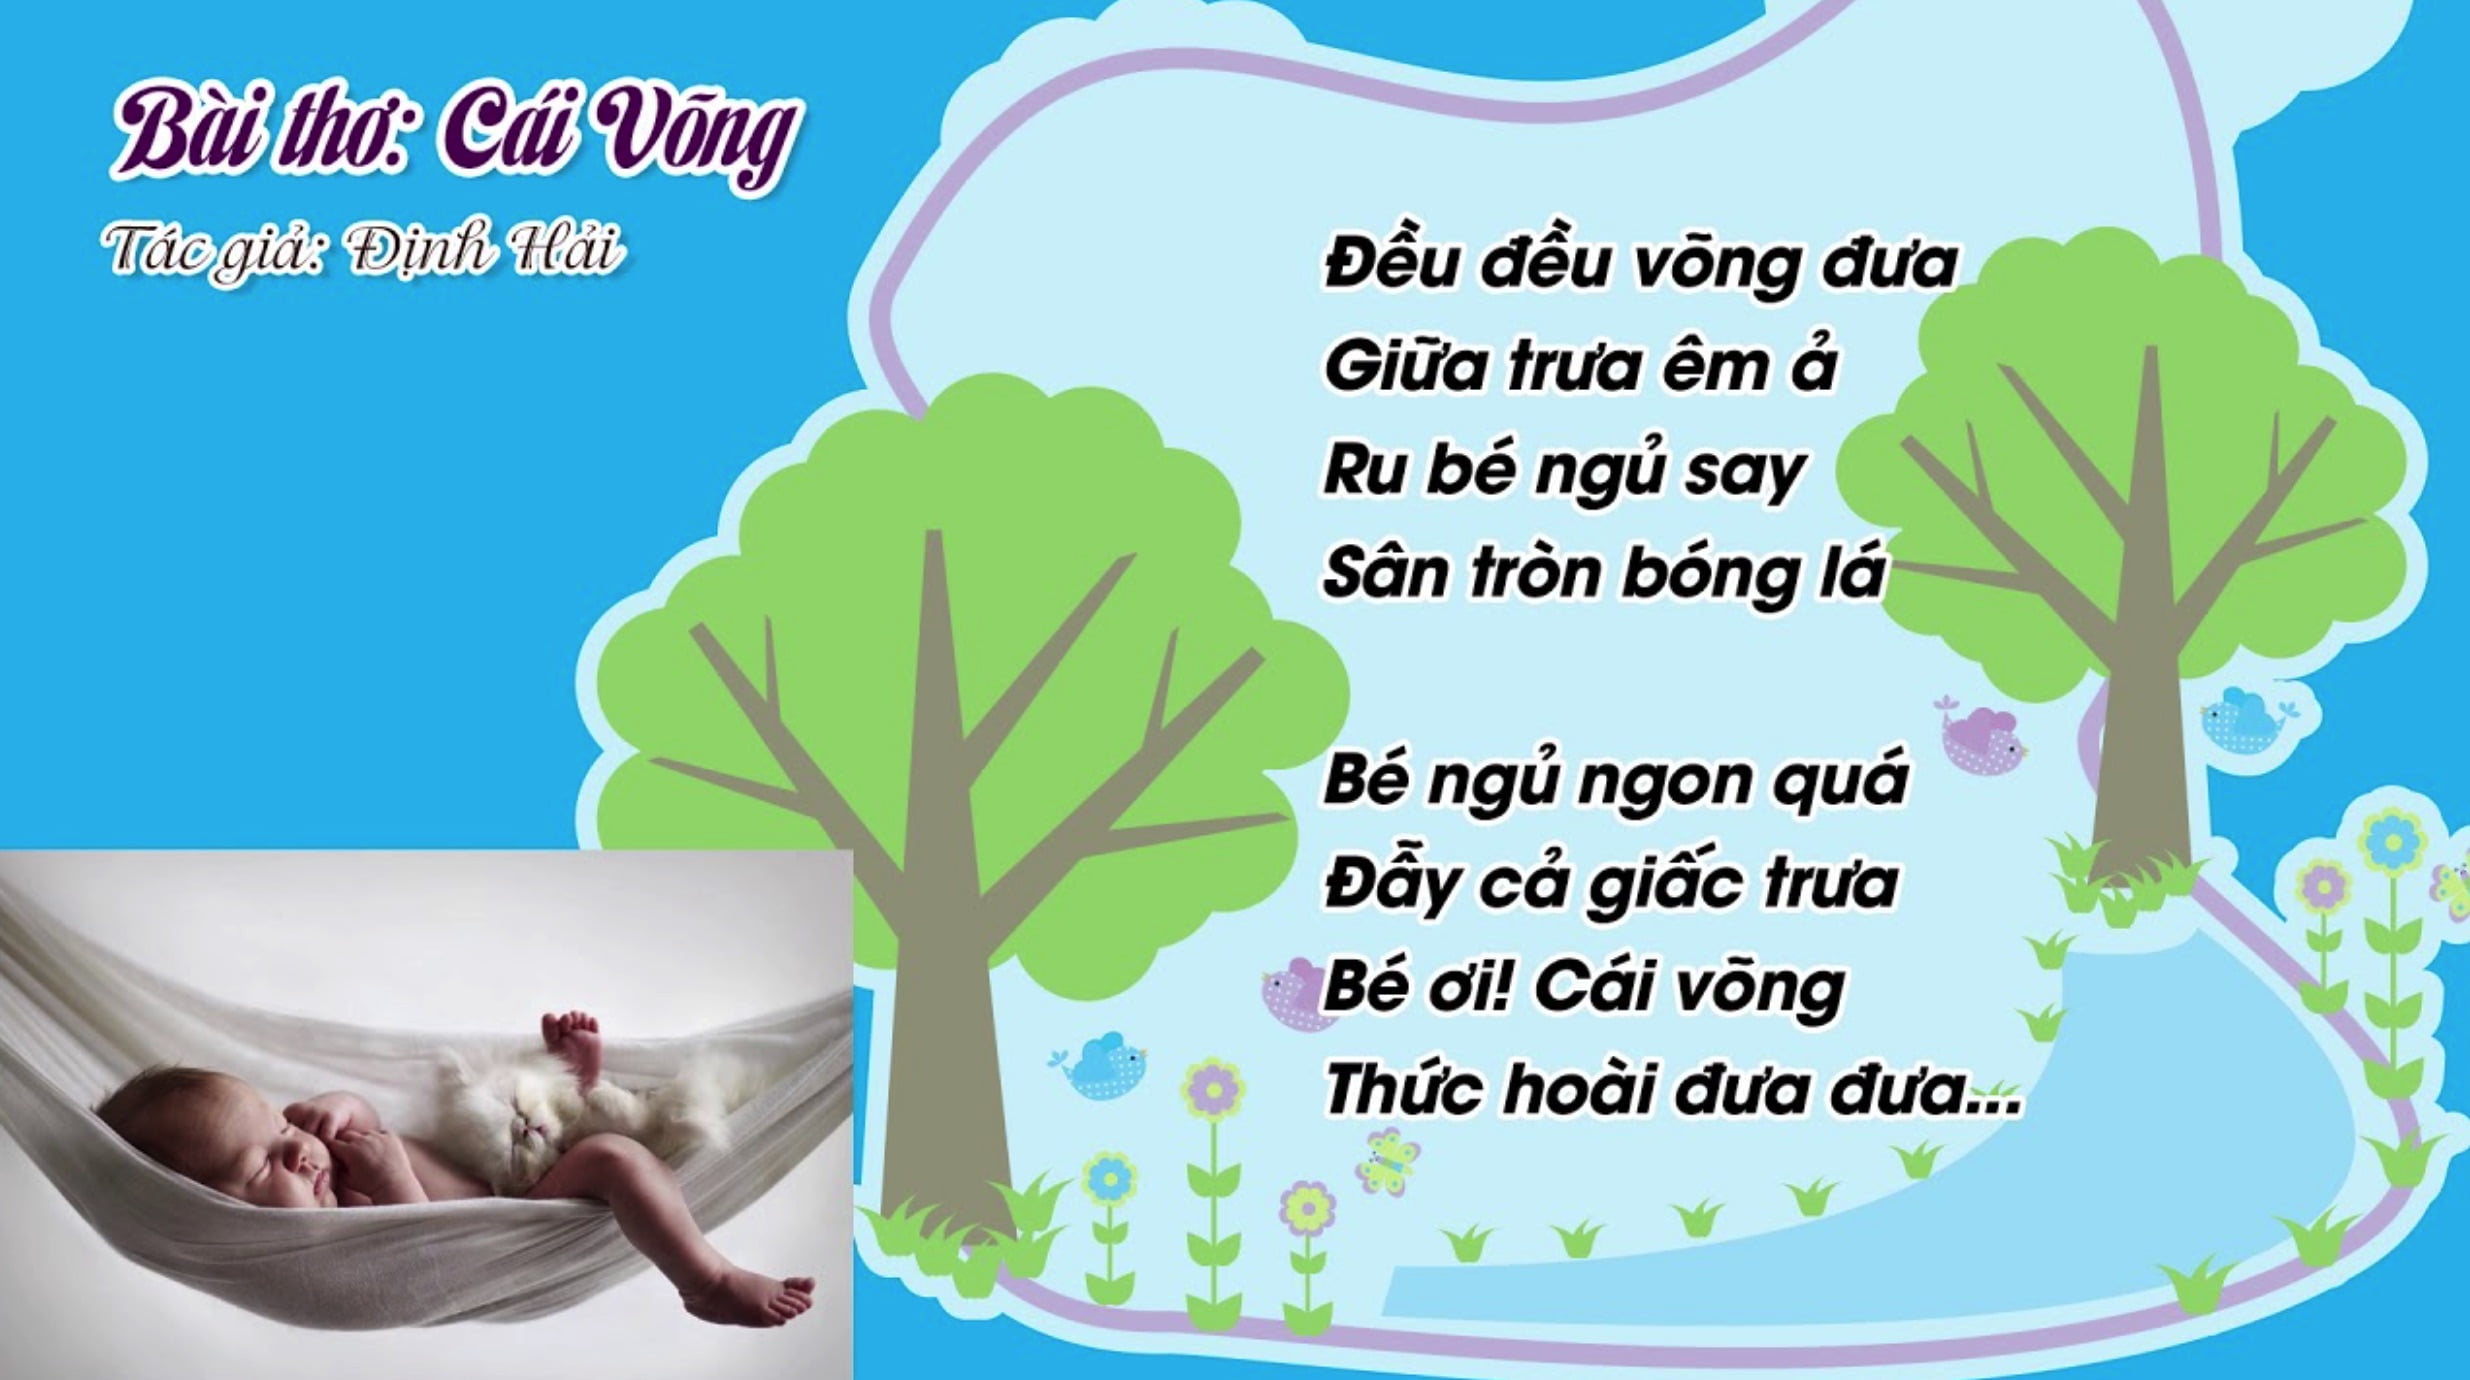 Bài thơ Cái võng (Định Hải)